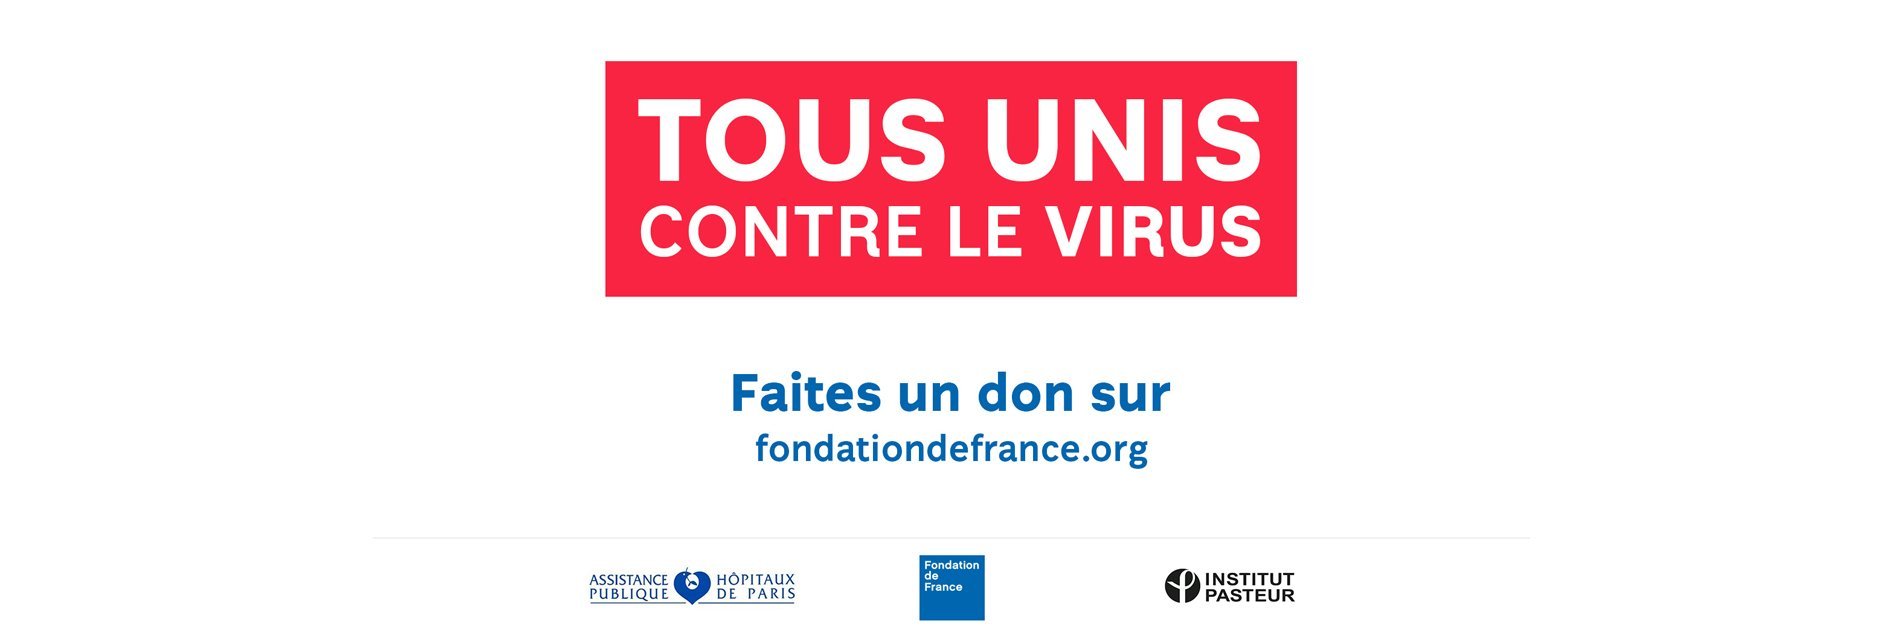 Tous unis contre le virus : La Fondation de France, l’AP-HP et l’Institut Pasteur unissent leur force